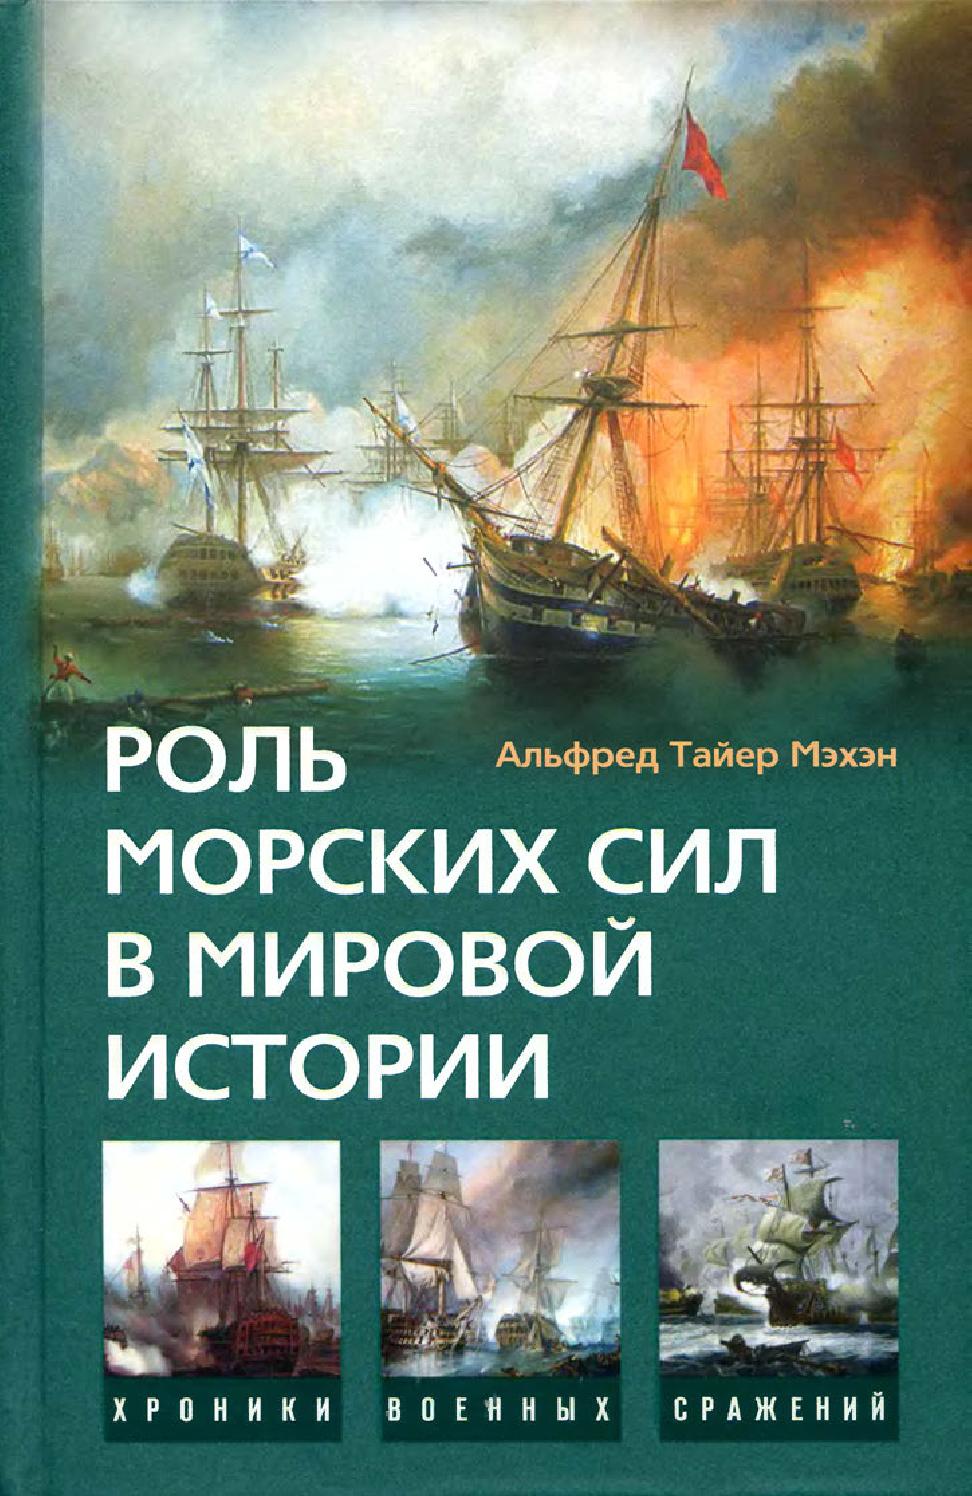 Роль морских сил в мировой истории. Часть 1, 2008, Мэхэн А.Т.